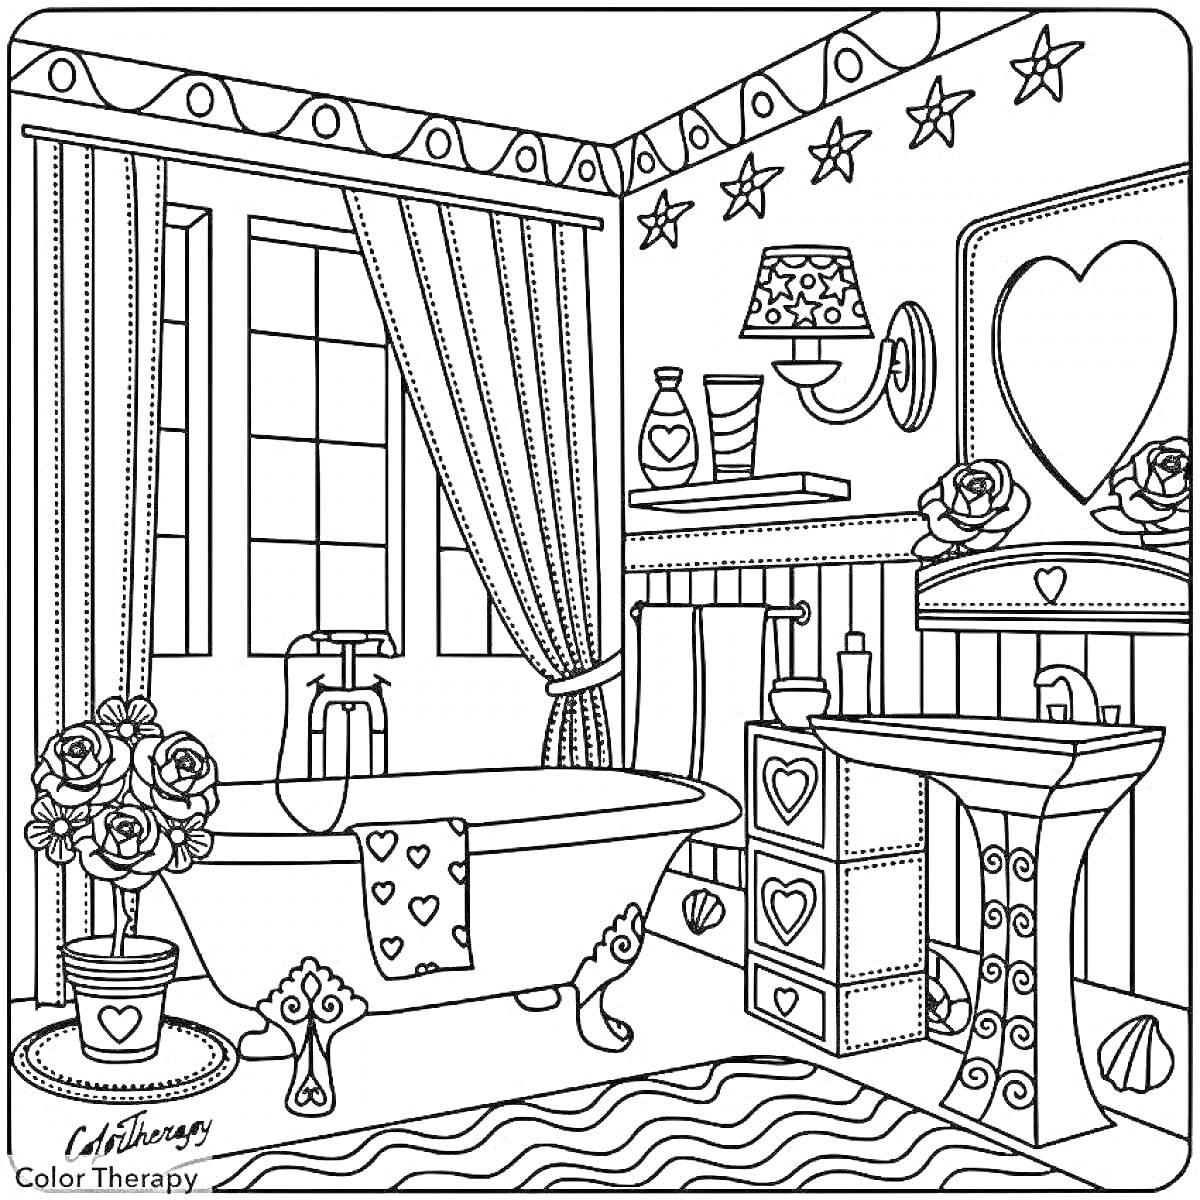 Раскраска Ванная комната с мебелью и украшениями Элементы: ванна, занавески, окно, полотенце, ковер, раковина, зеркало, полка, лампа, флаконы, мыло, розы, звезды на стенах